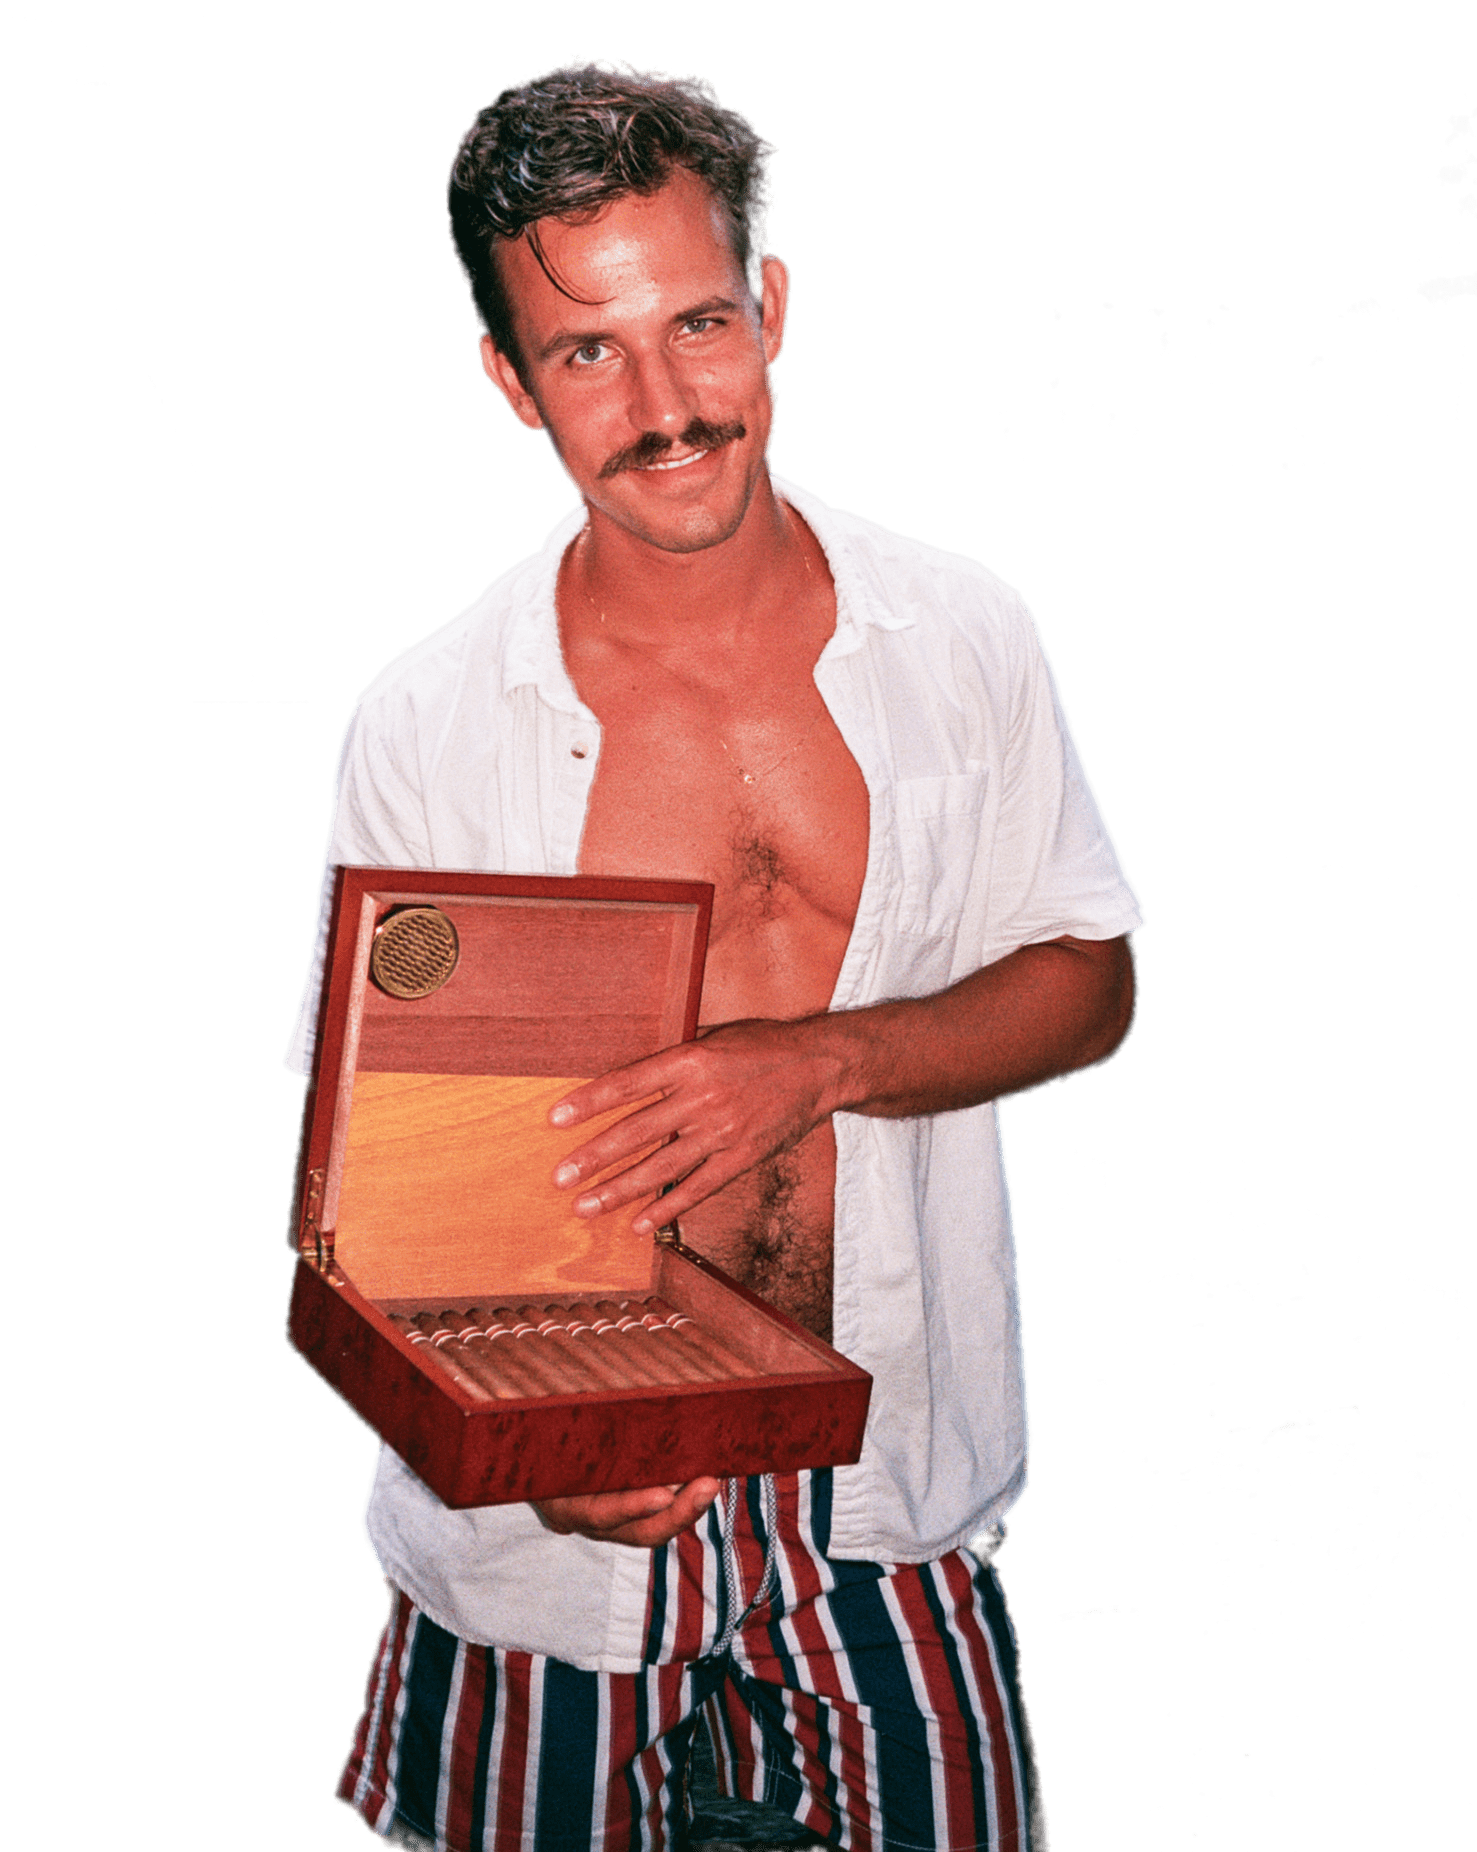 Ricky Beach with cigars